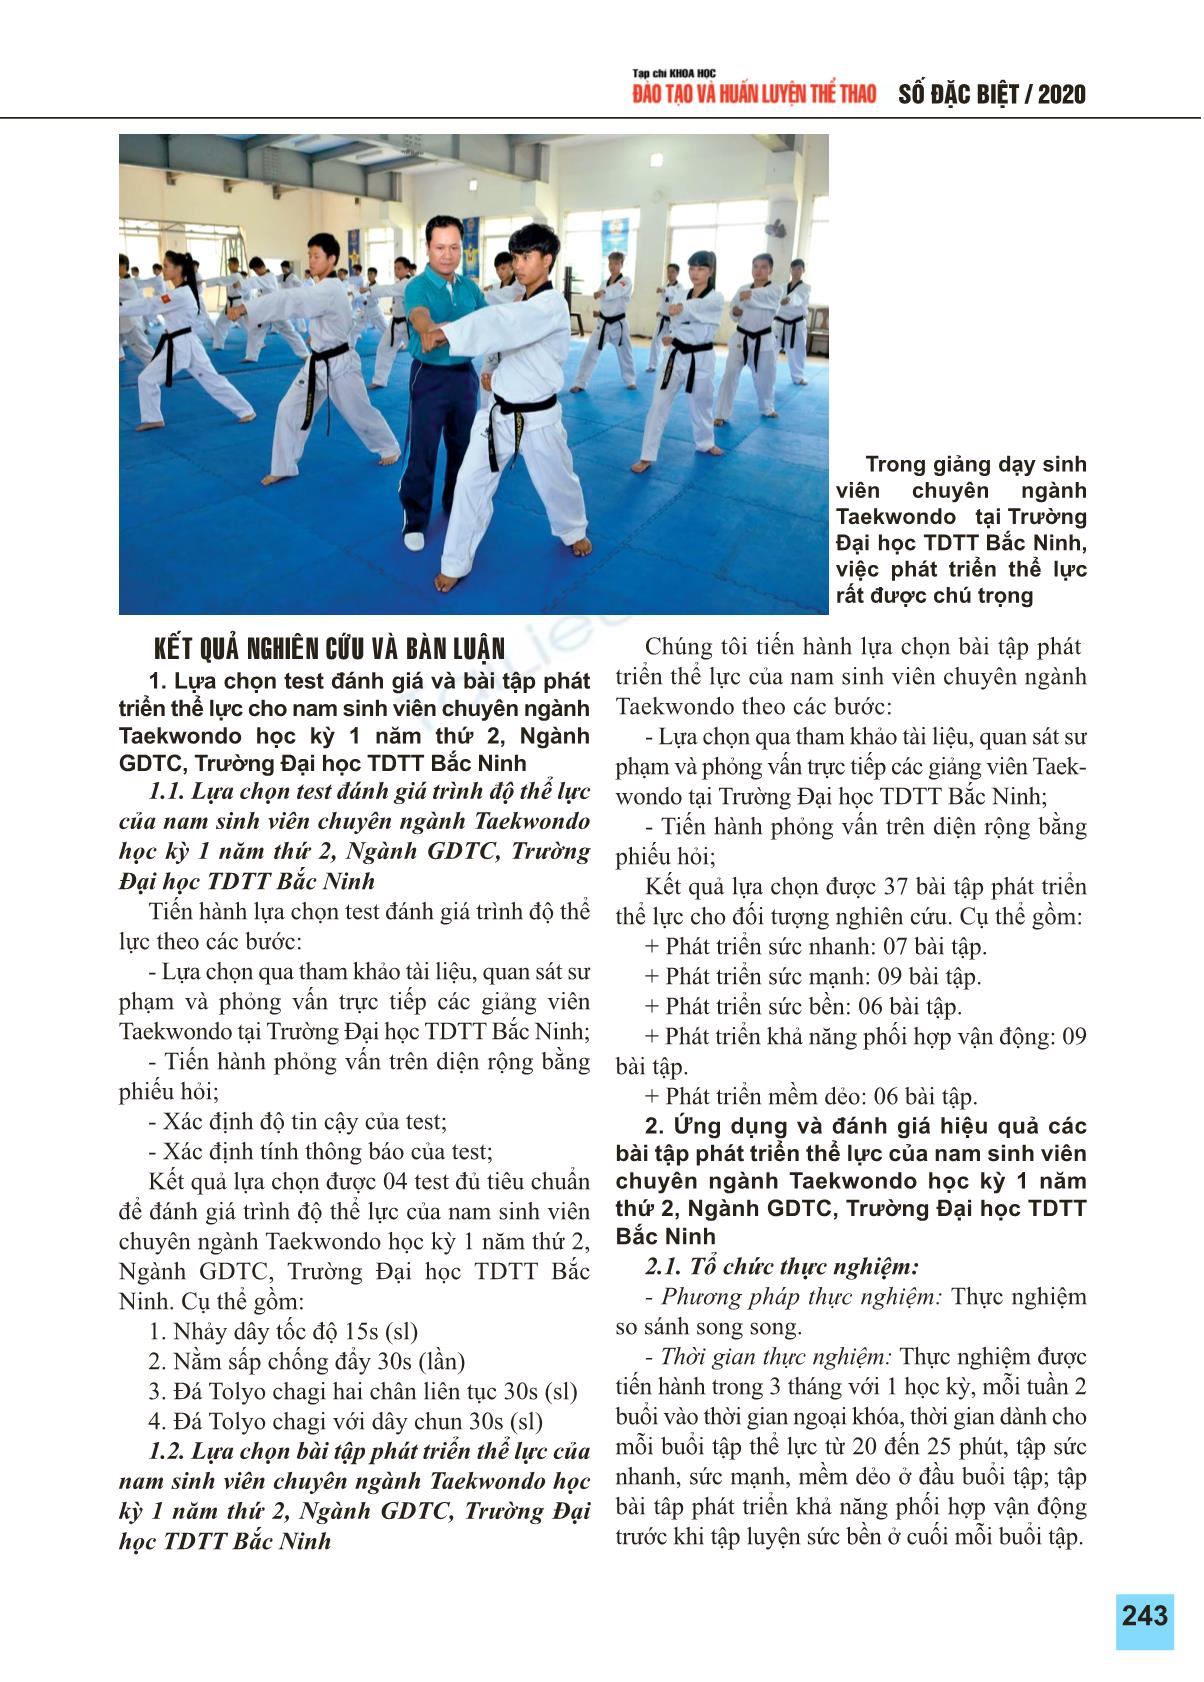 Lựa chọn bài tập phát triển thể lực của nam sinh viên chuyên ngành Taekwondo học kỳ 1 năm thứ 2 ngành giáo dục thể chất trường đại học thể dục thể thao Bắc Ninh trang 2